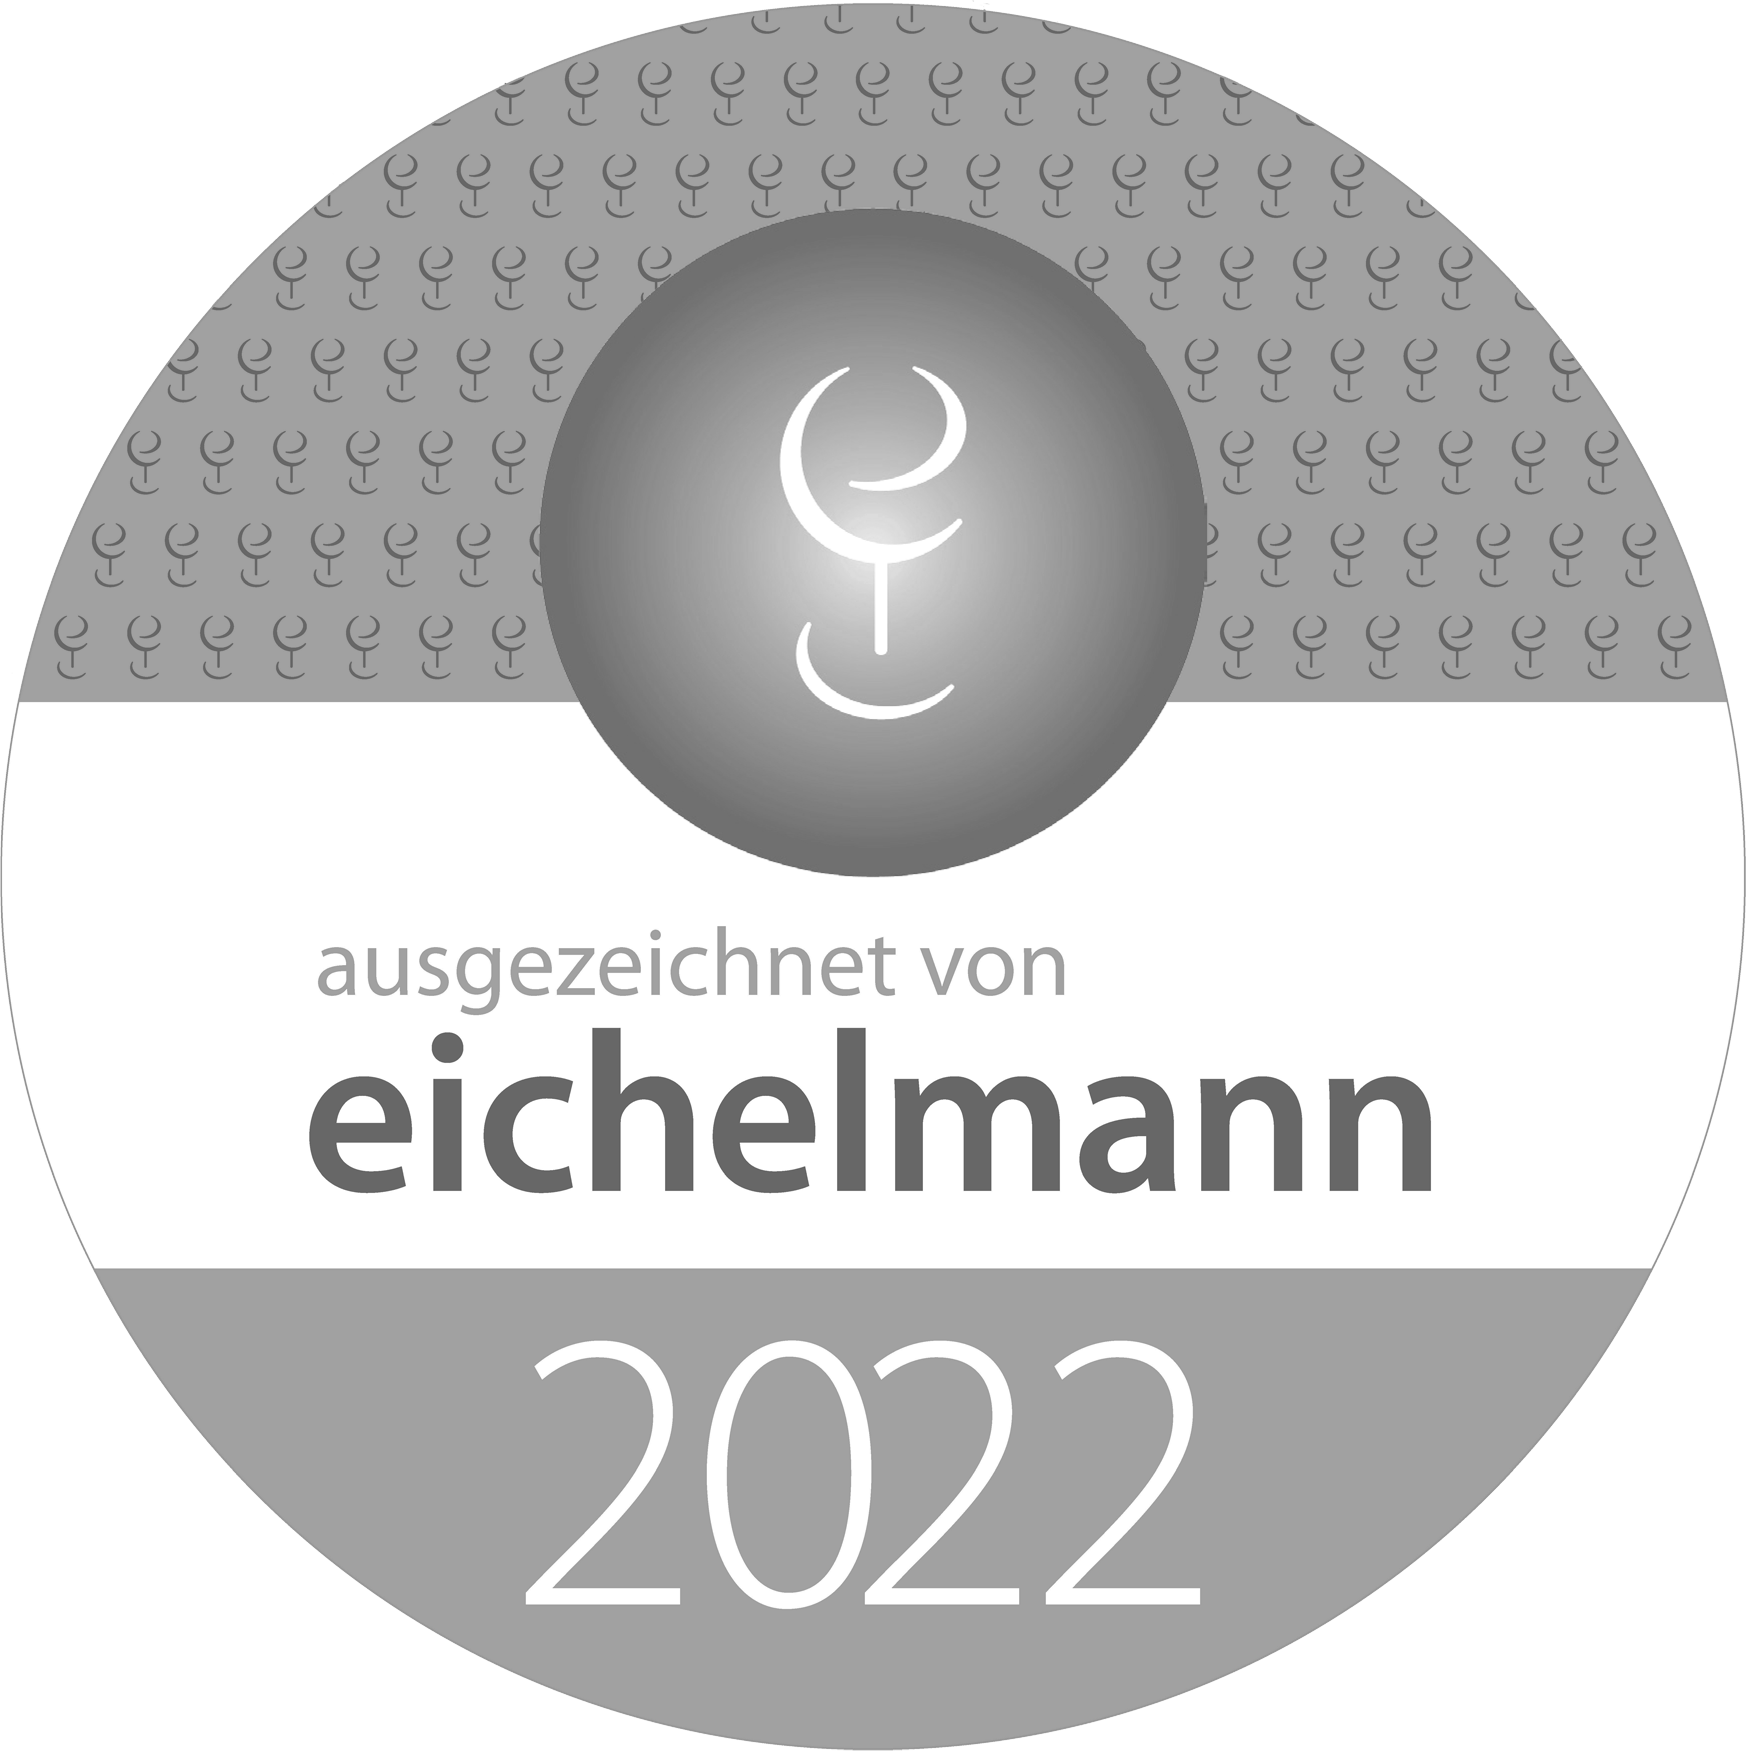 Eichelmann-2022-Weinführer-Auszeichnung